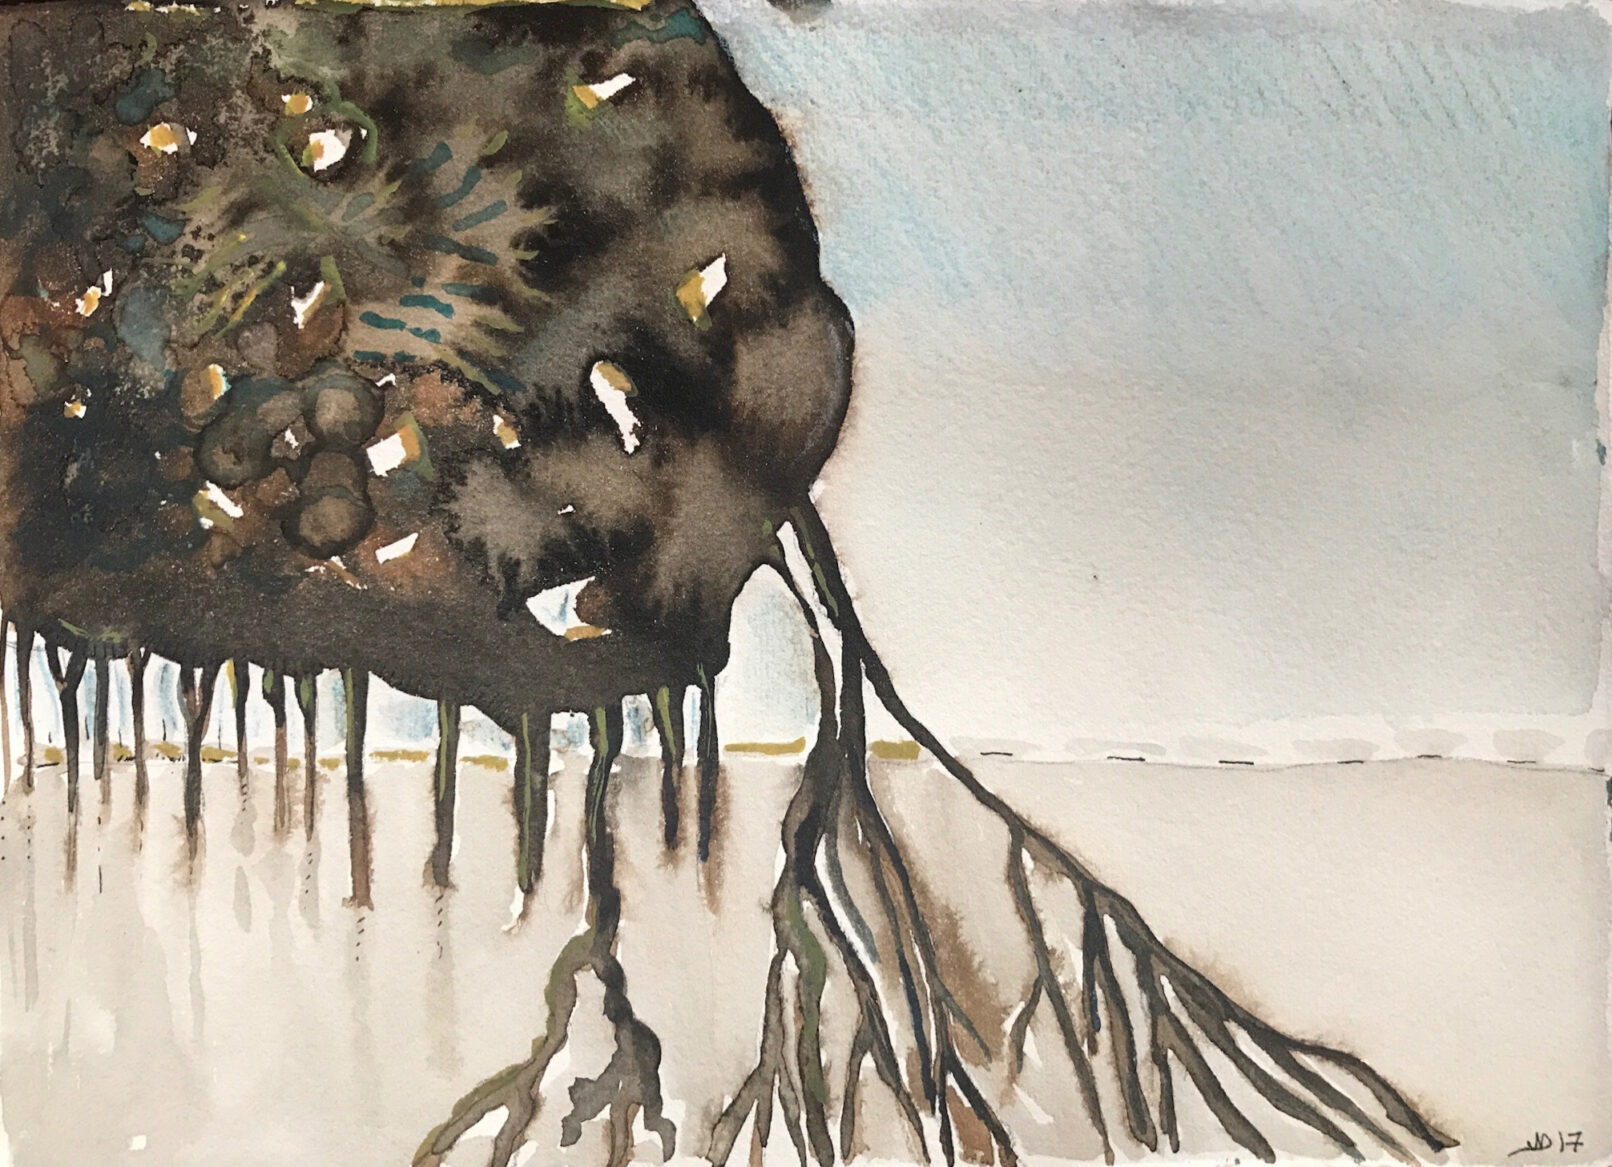 Mangrove, aquarelle et encre de chine sur papier 2017